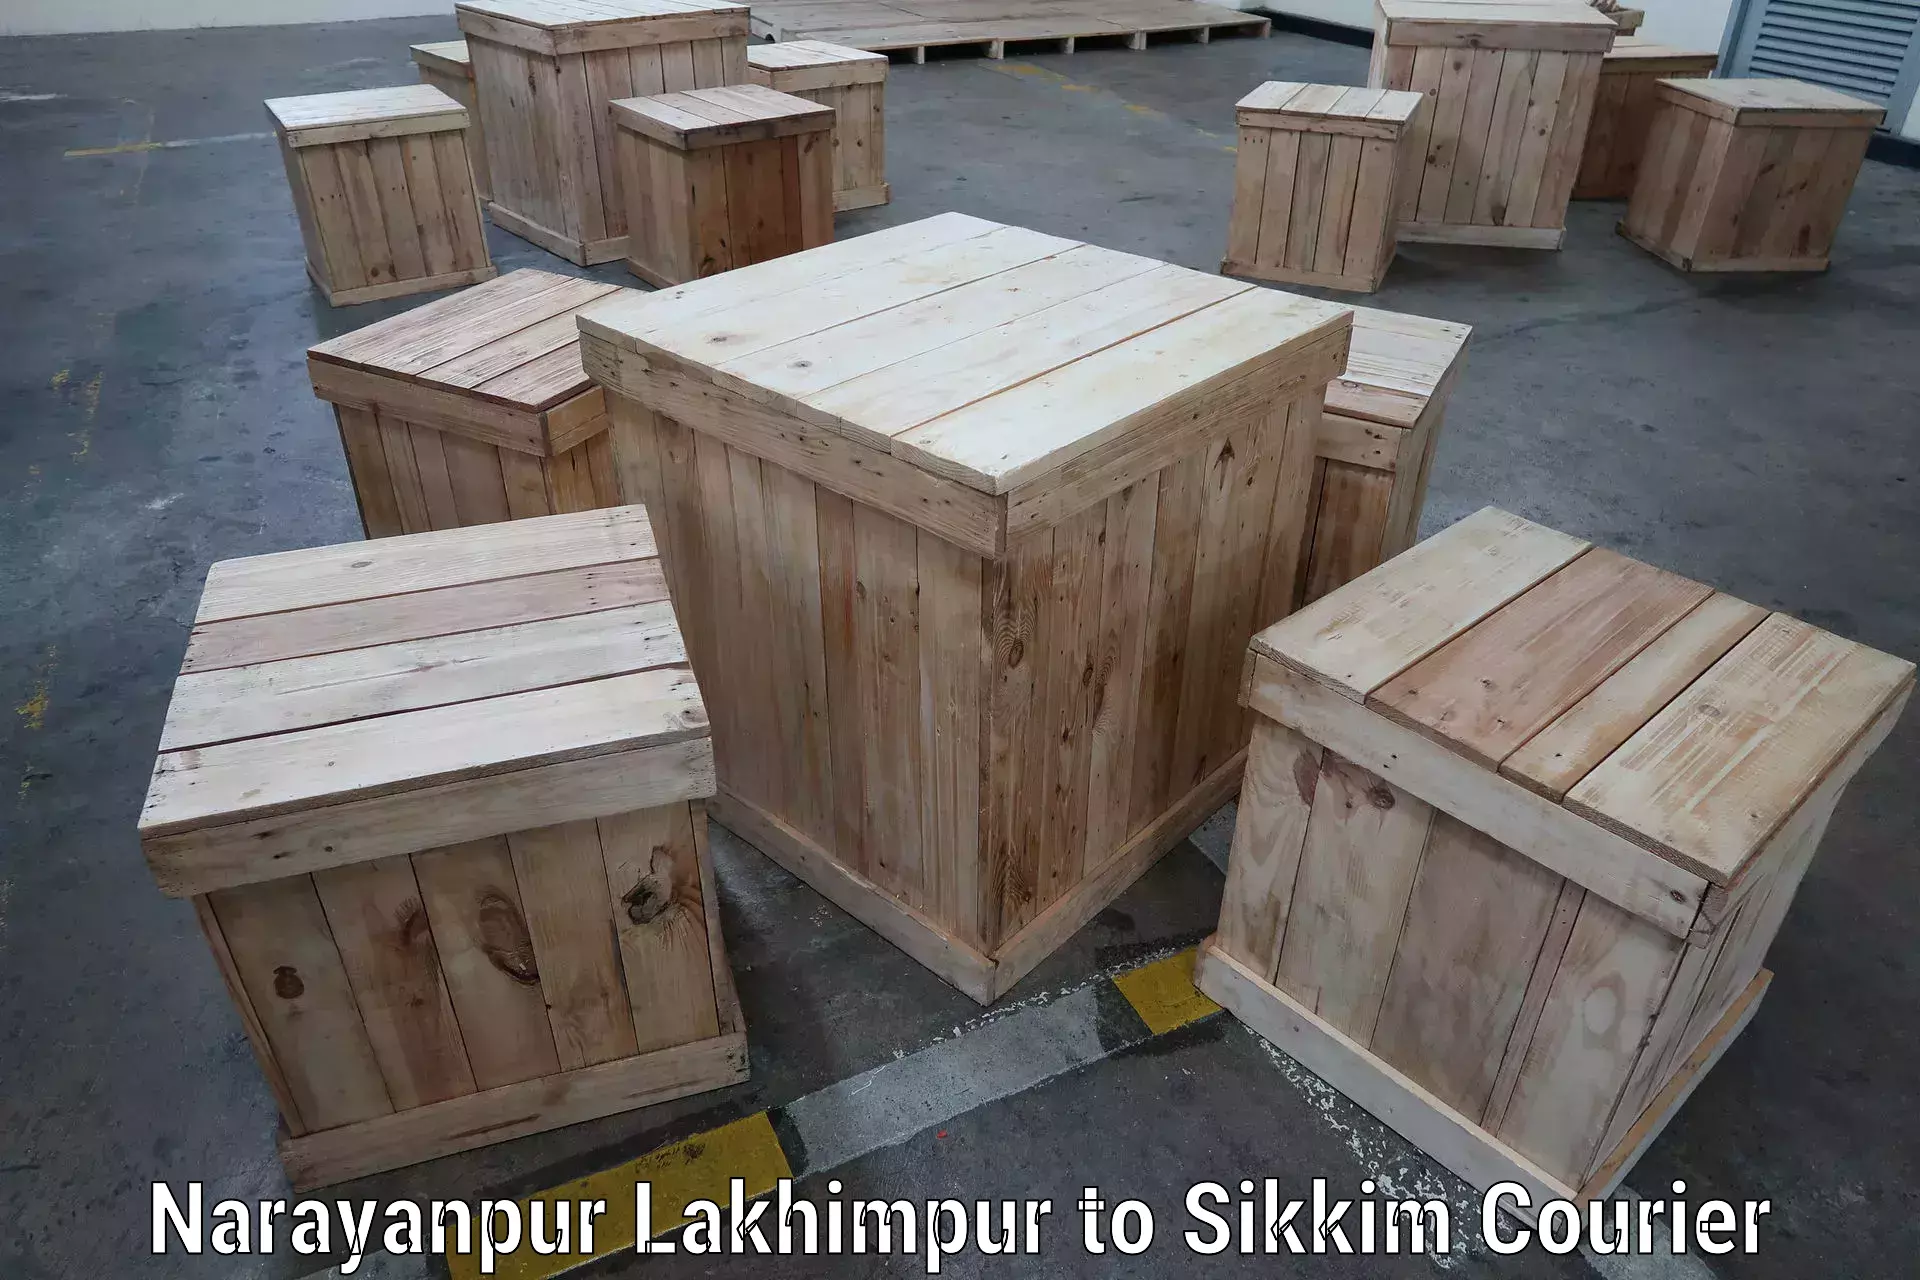 International parcel service Narayanpur Lakhimpur to Sikkim